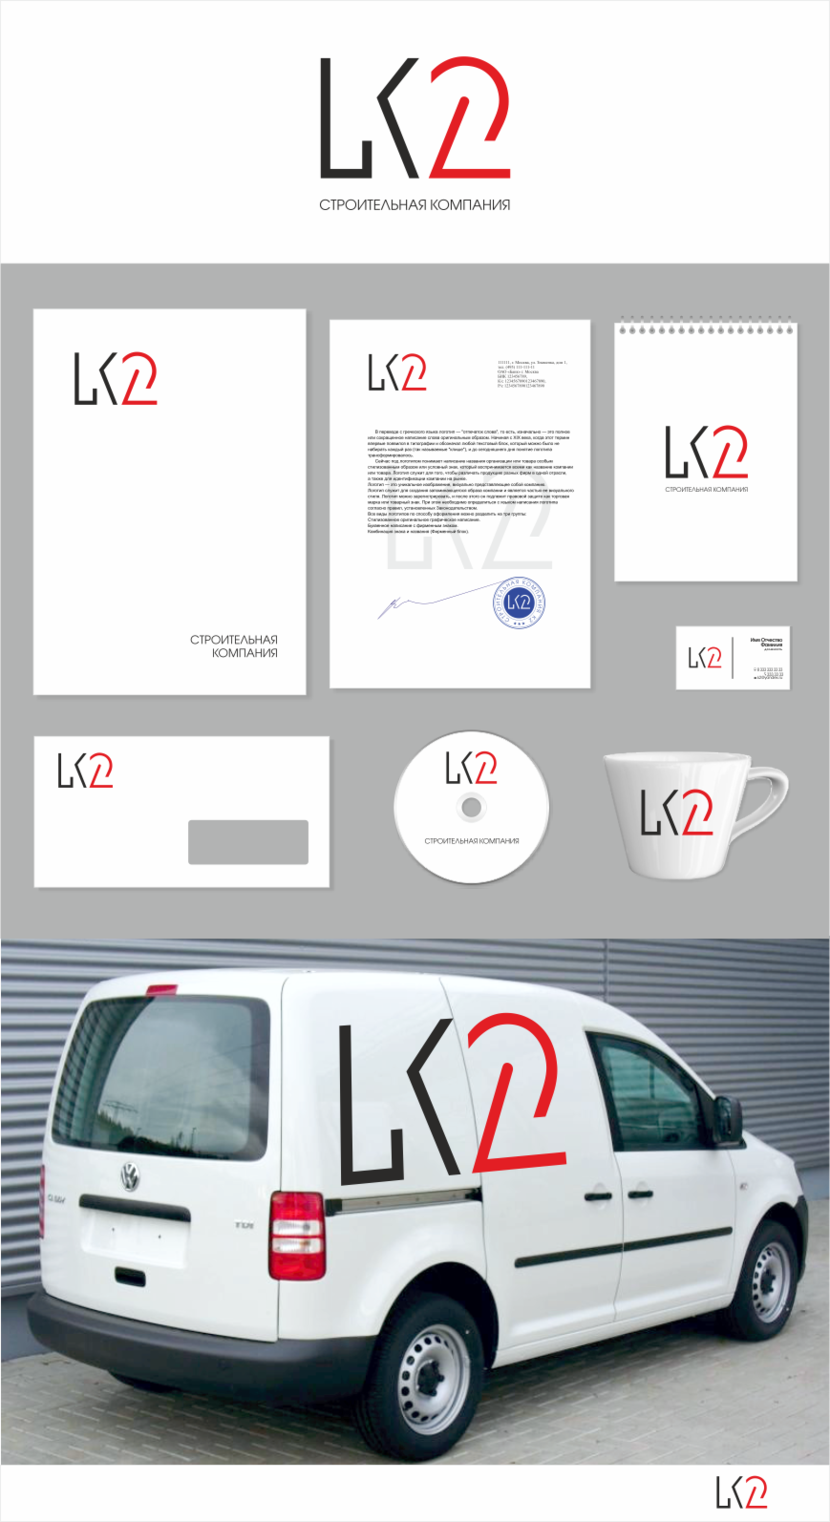 К2 - Разработка логотипа и фирменного стиля строительной компании.